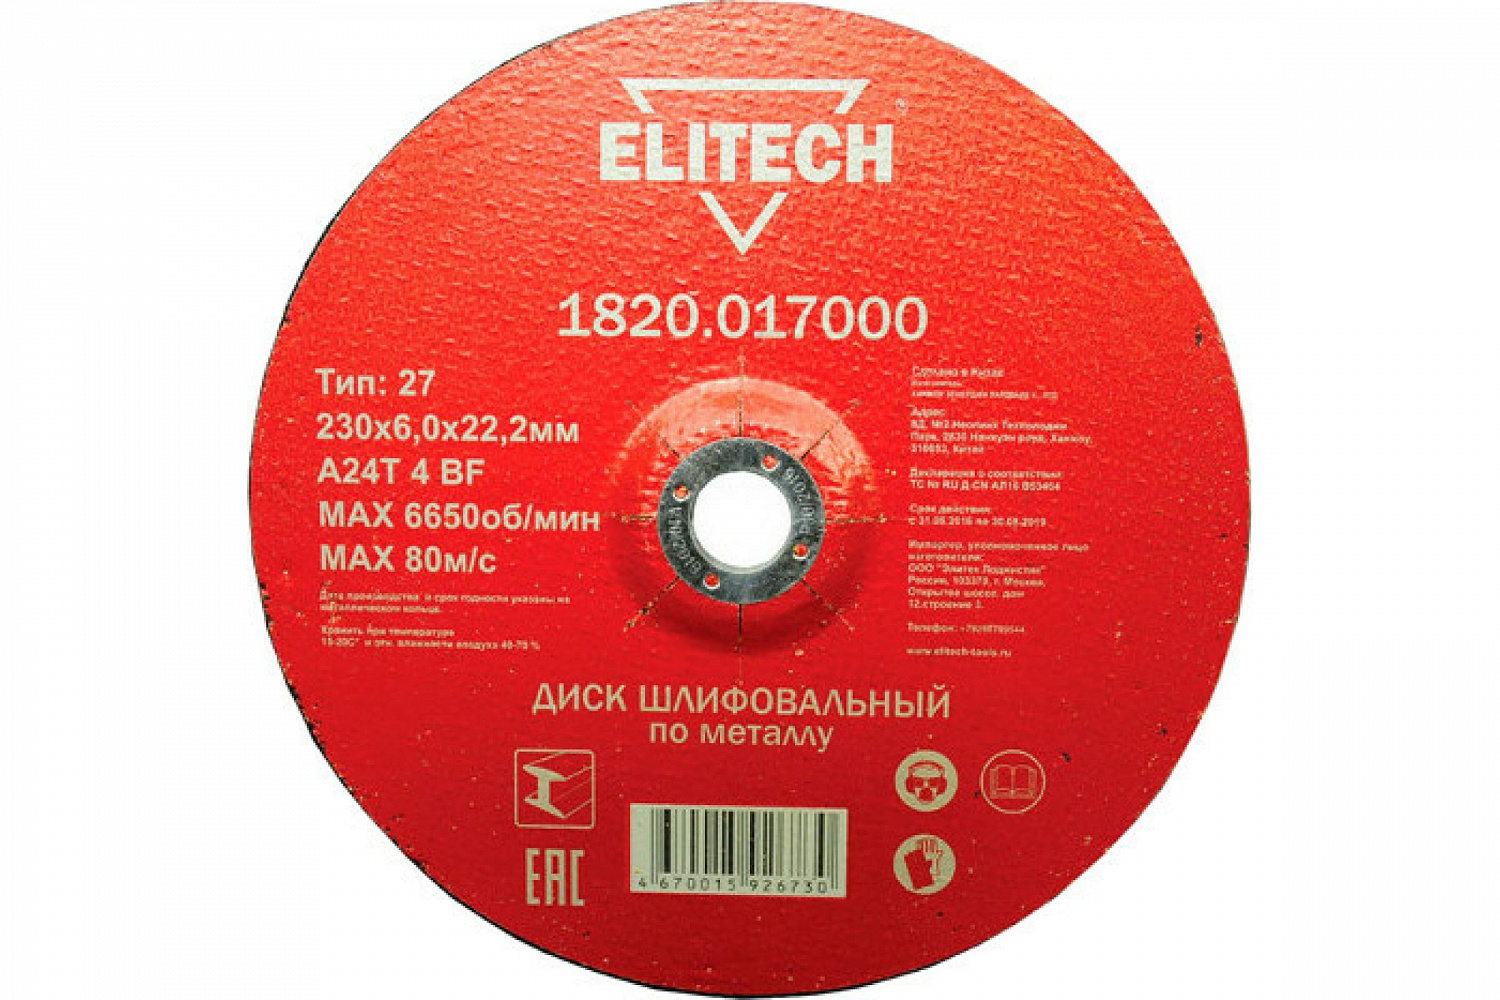 Круг шлифовальный ф230х6,0х22 для металла 1/10 (Elitech) 1820,017